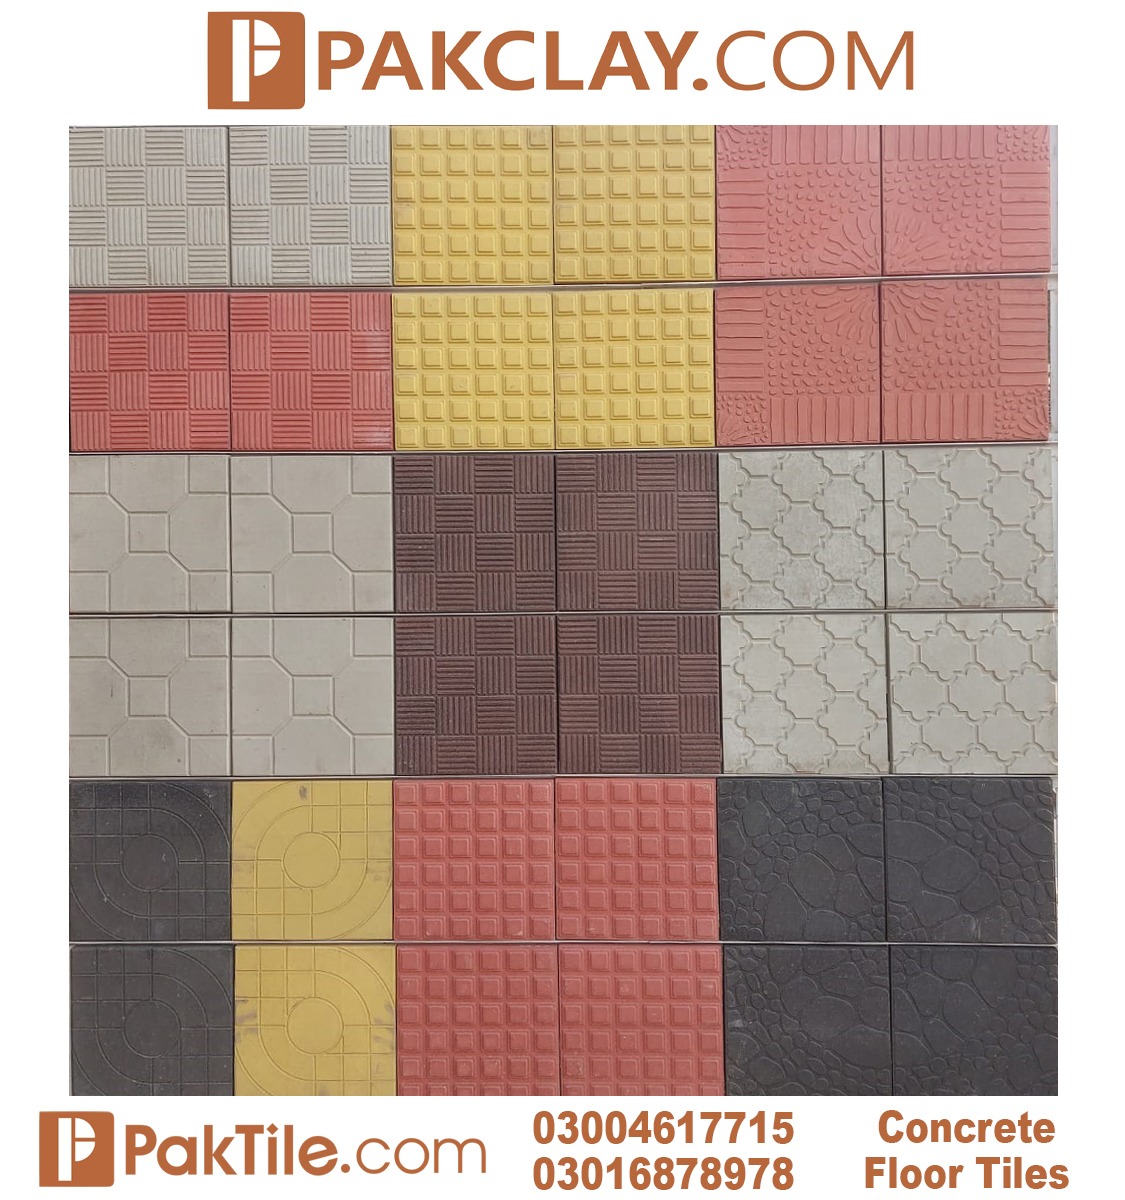 5 Pak Clay Tiles Lahore Concrete Floor Tiles Design